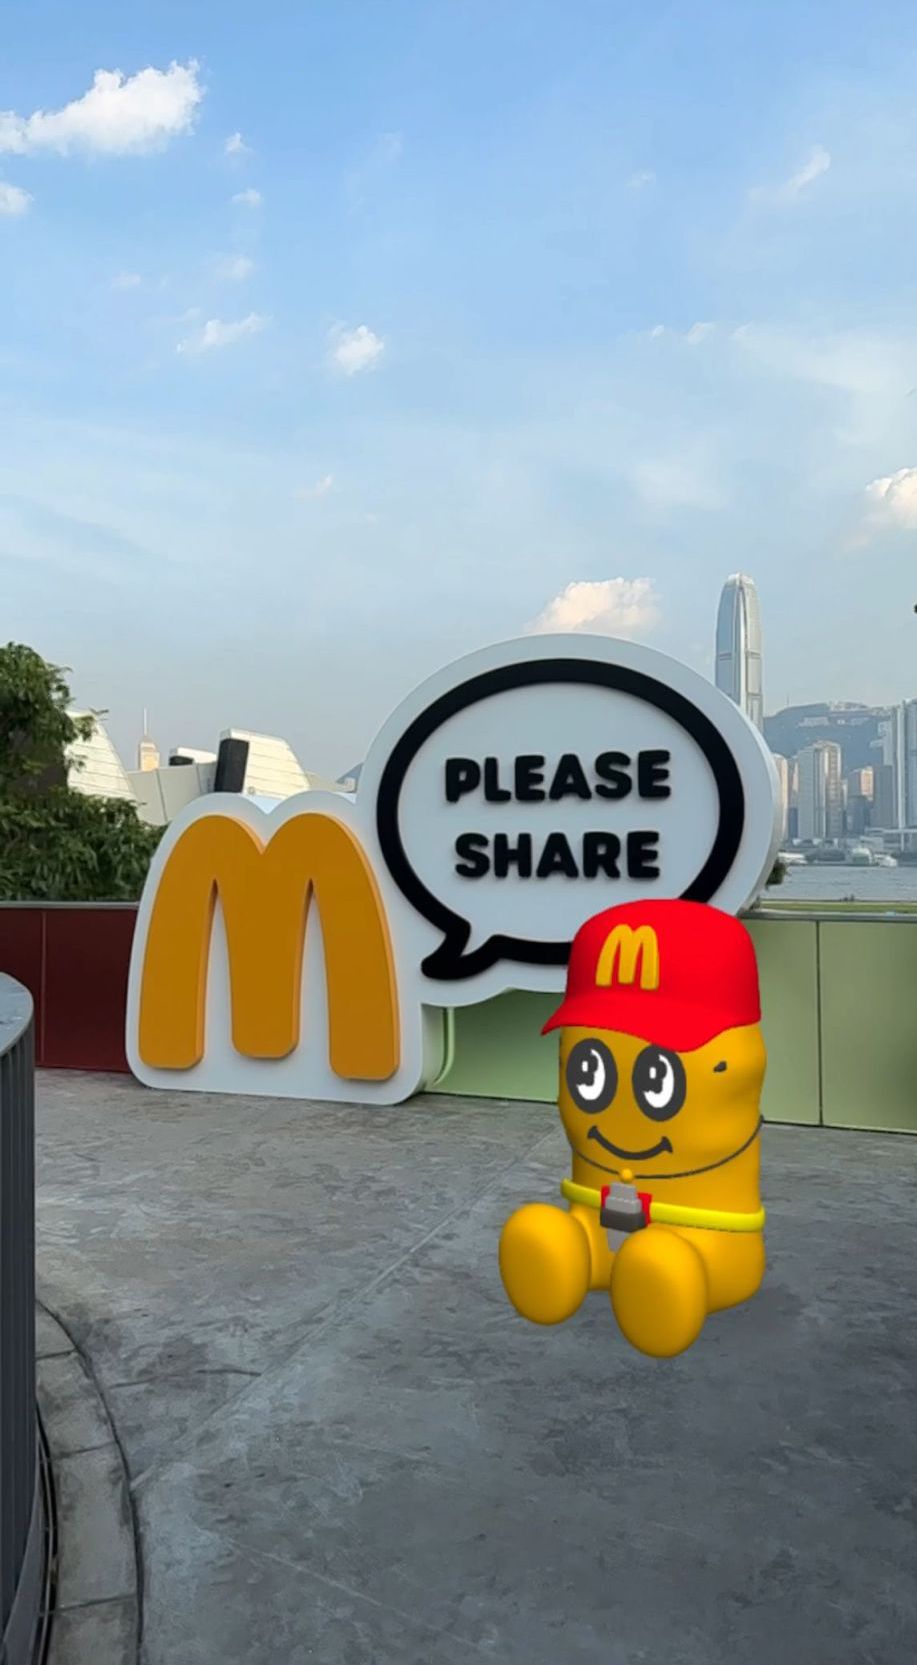 参观者可以即场试玩麦乐鸡 40周年主题 IG Filter，分享到社交平台。（图片来源：香港麦当劳）